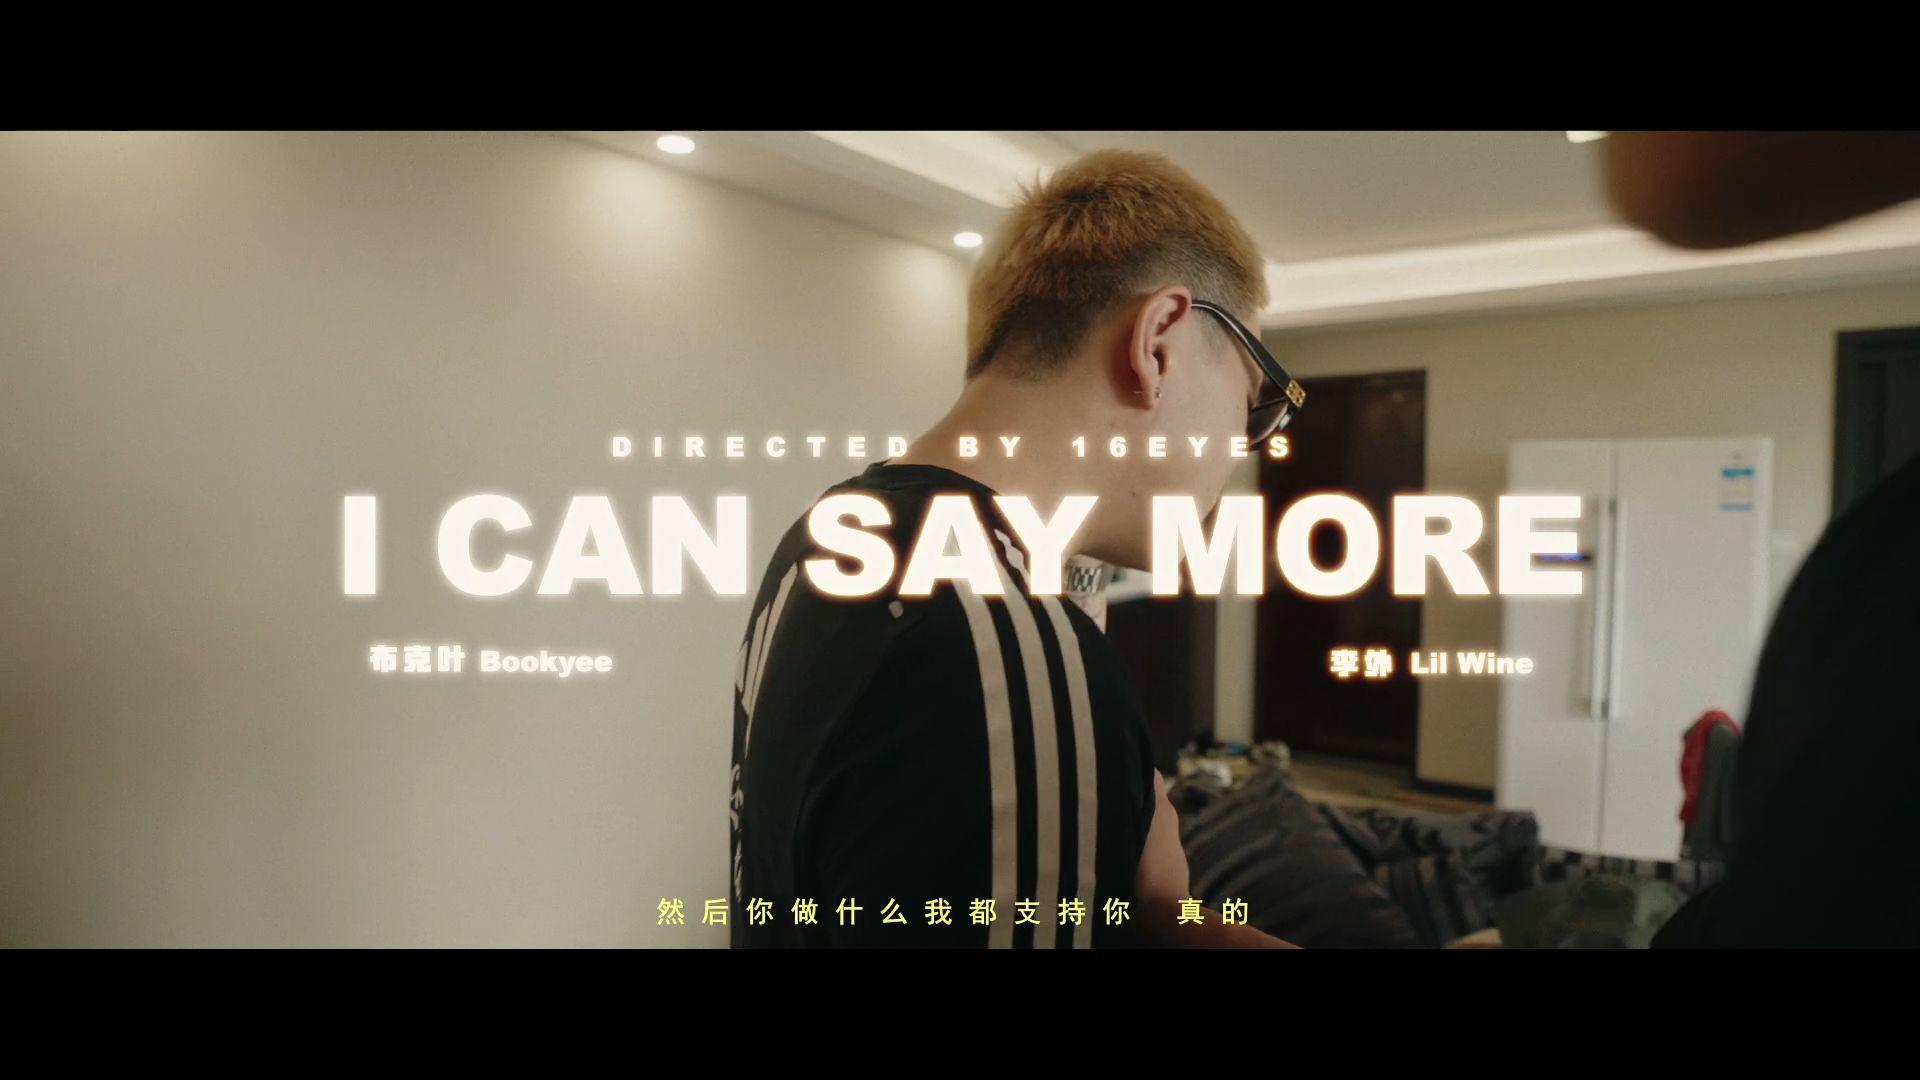 布克叶Bookyee - I CAN SAY MORE Music Official Video